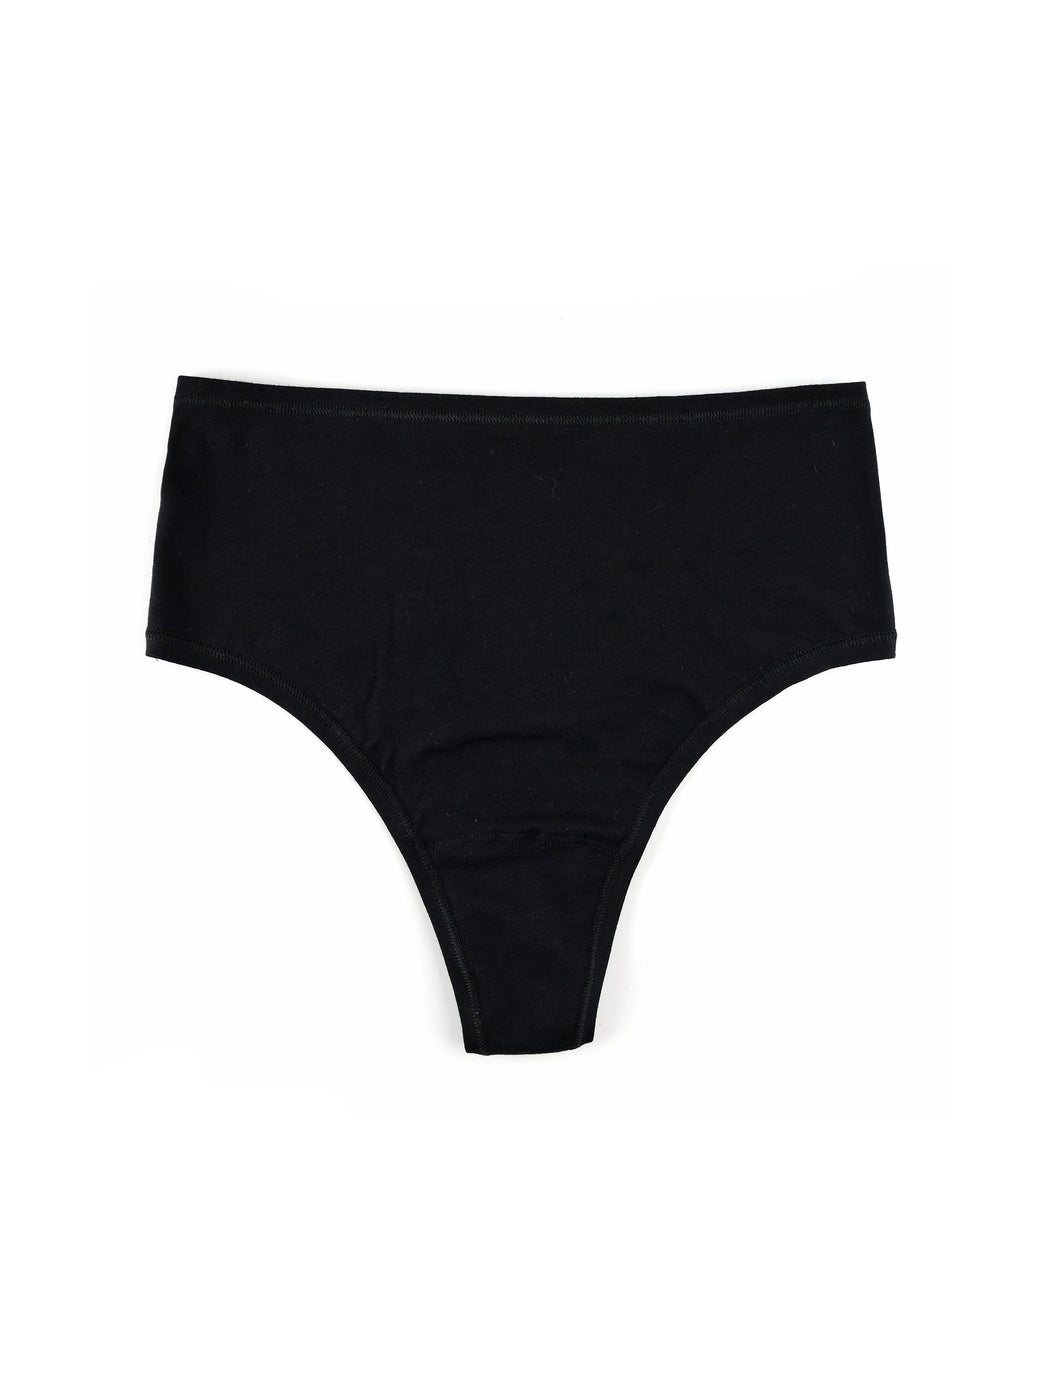 Stretch thong underwear women's low waist sexy sexy briefs short knitted  underwear